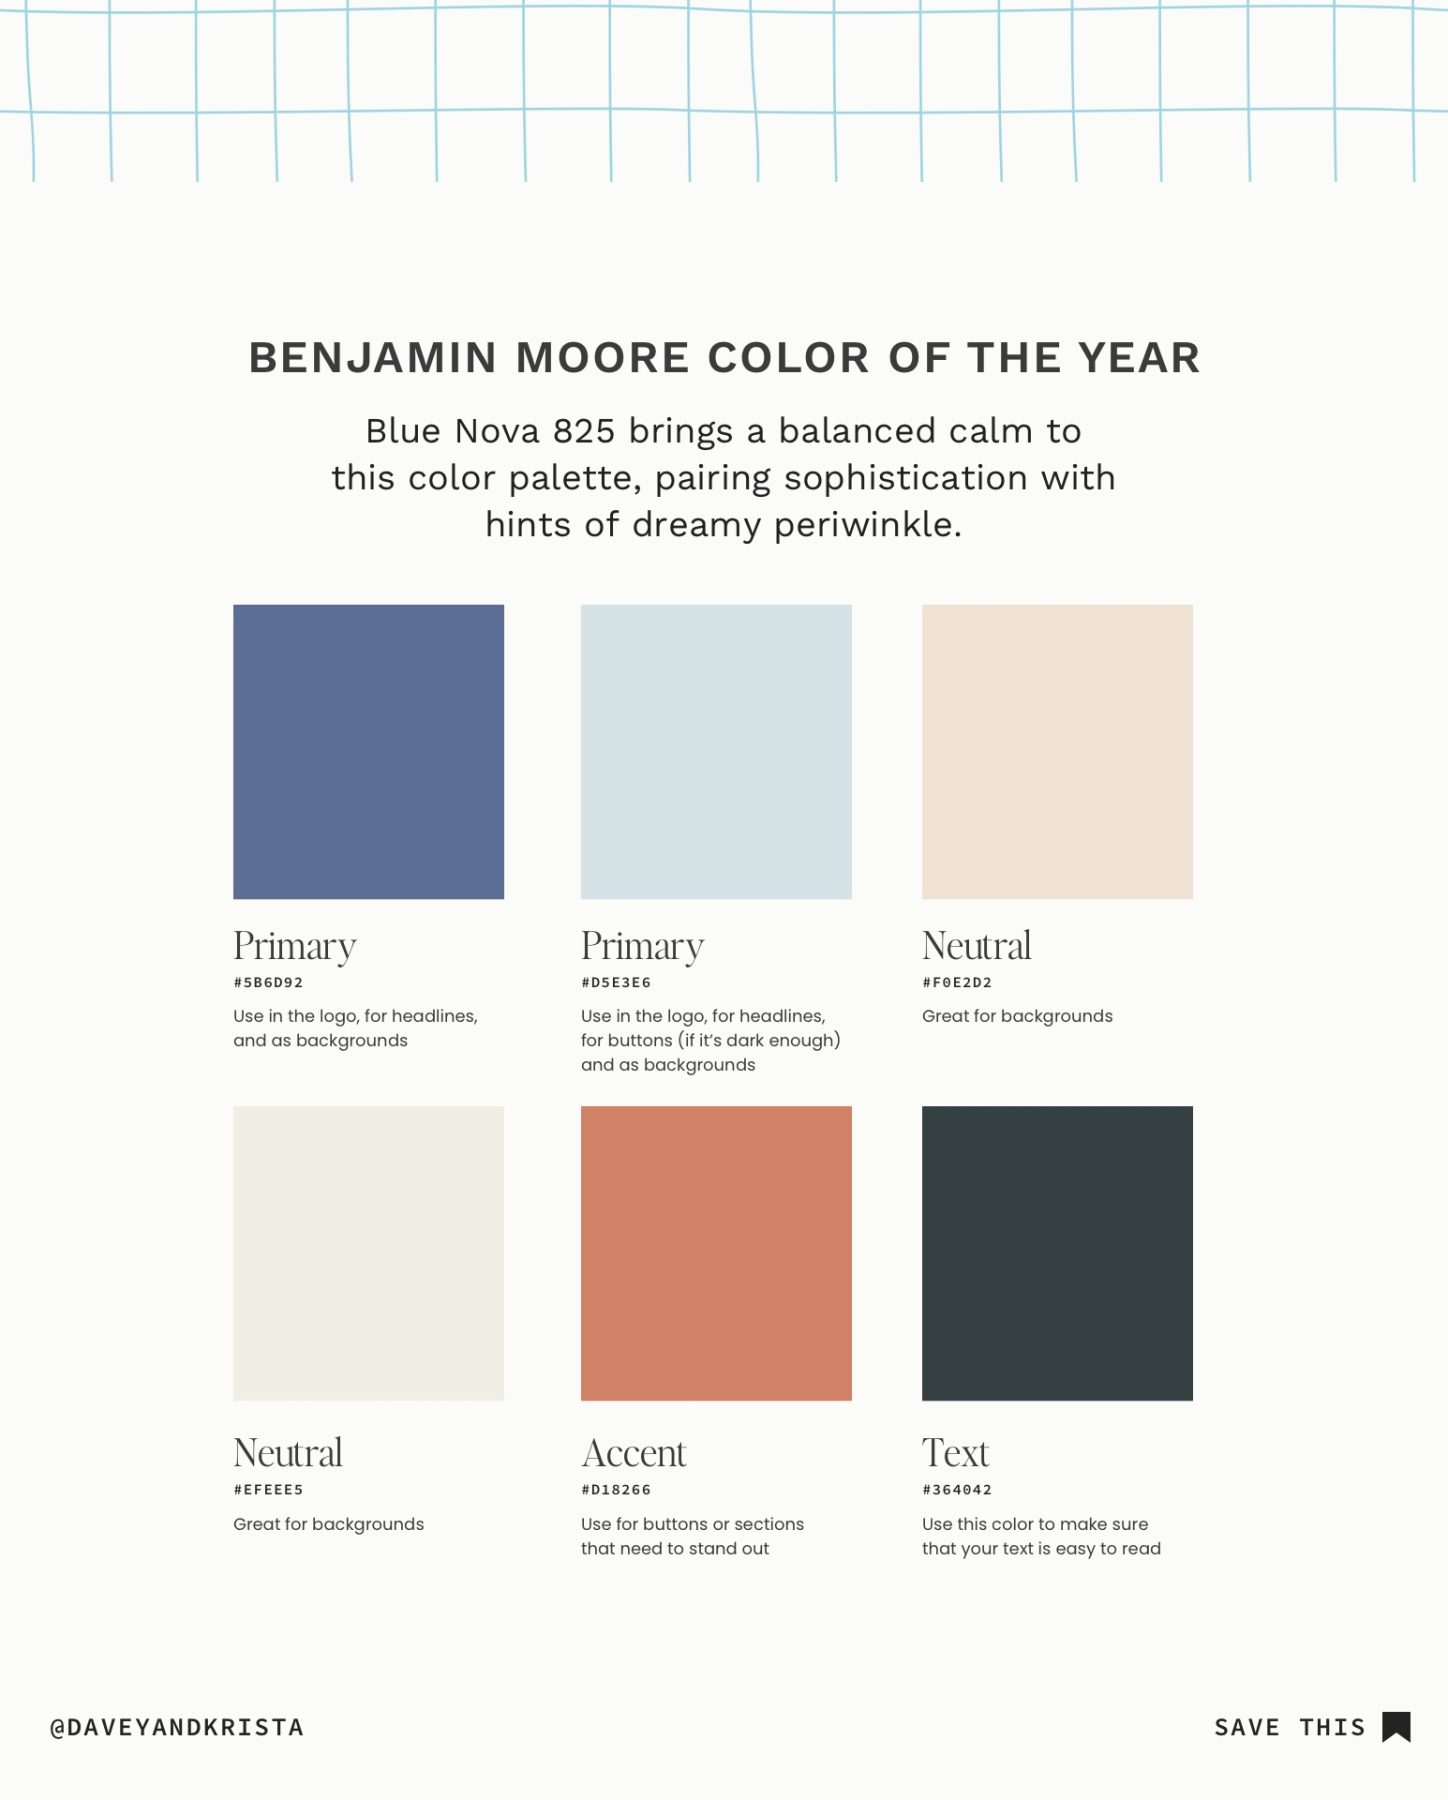 Benjamin Moore Color Palette for websites and brands.